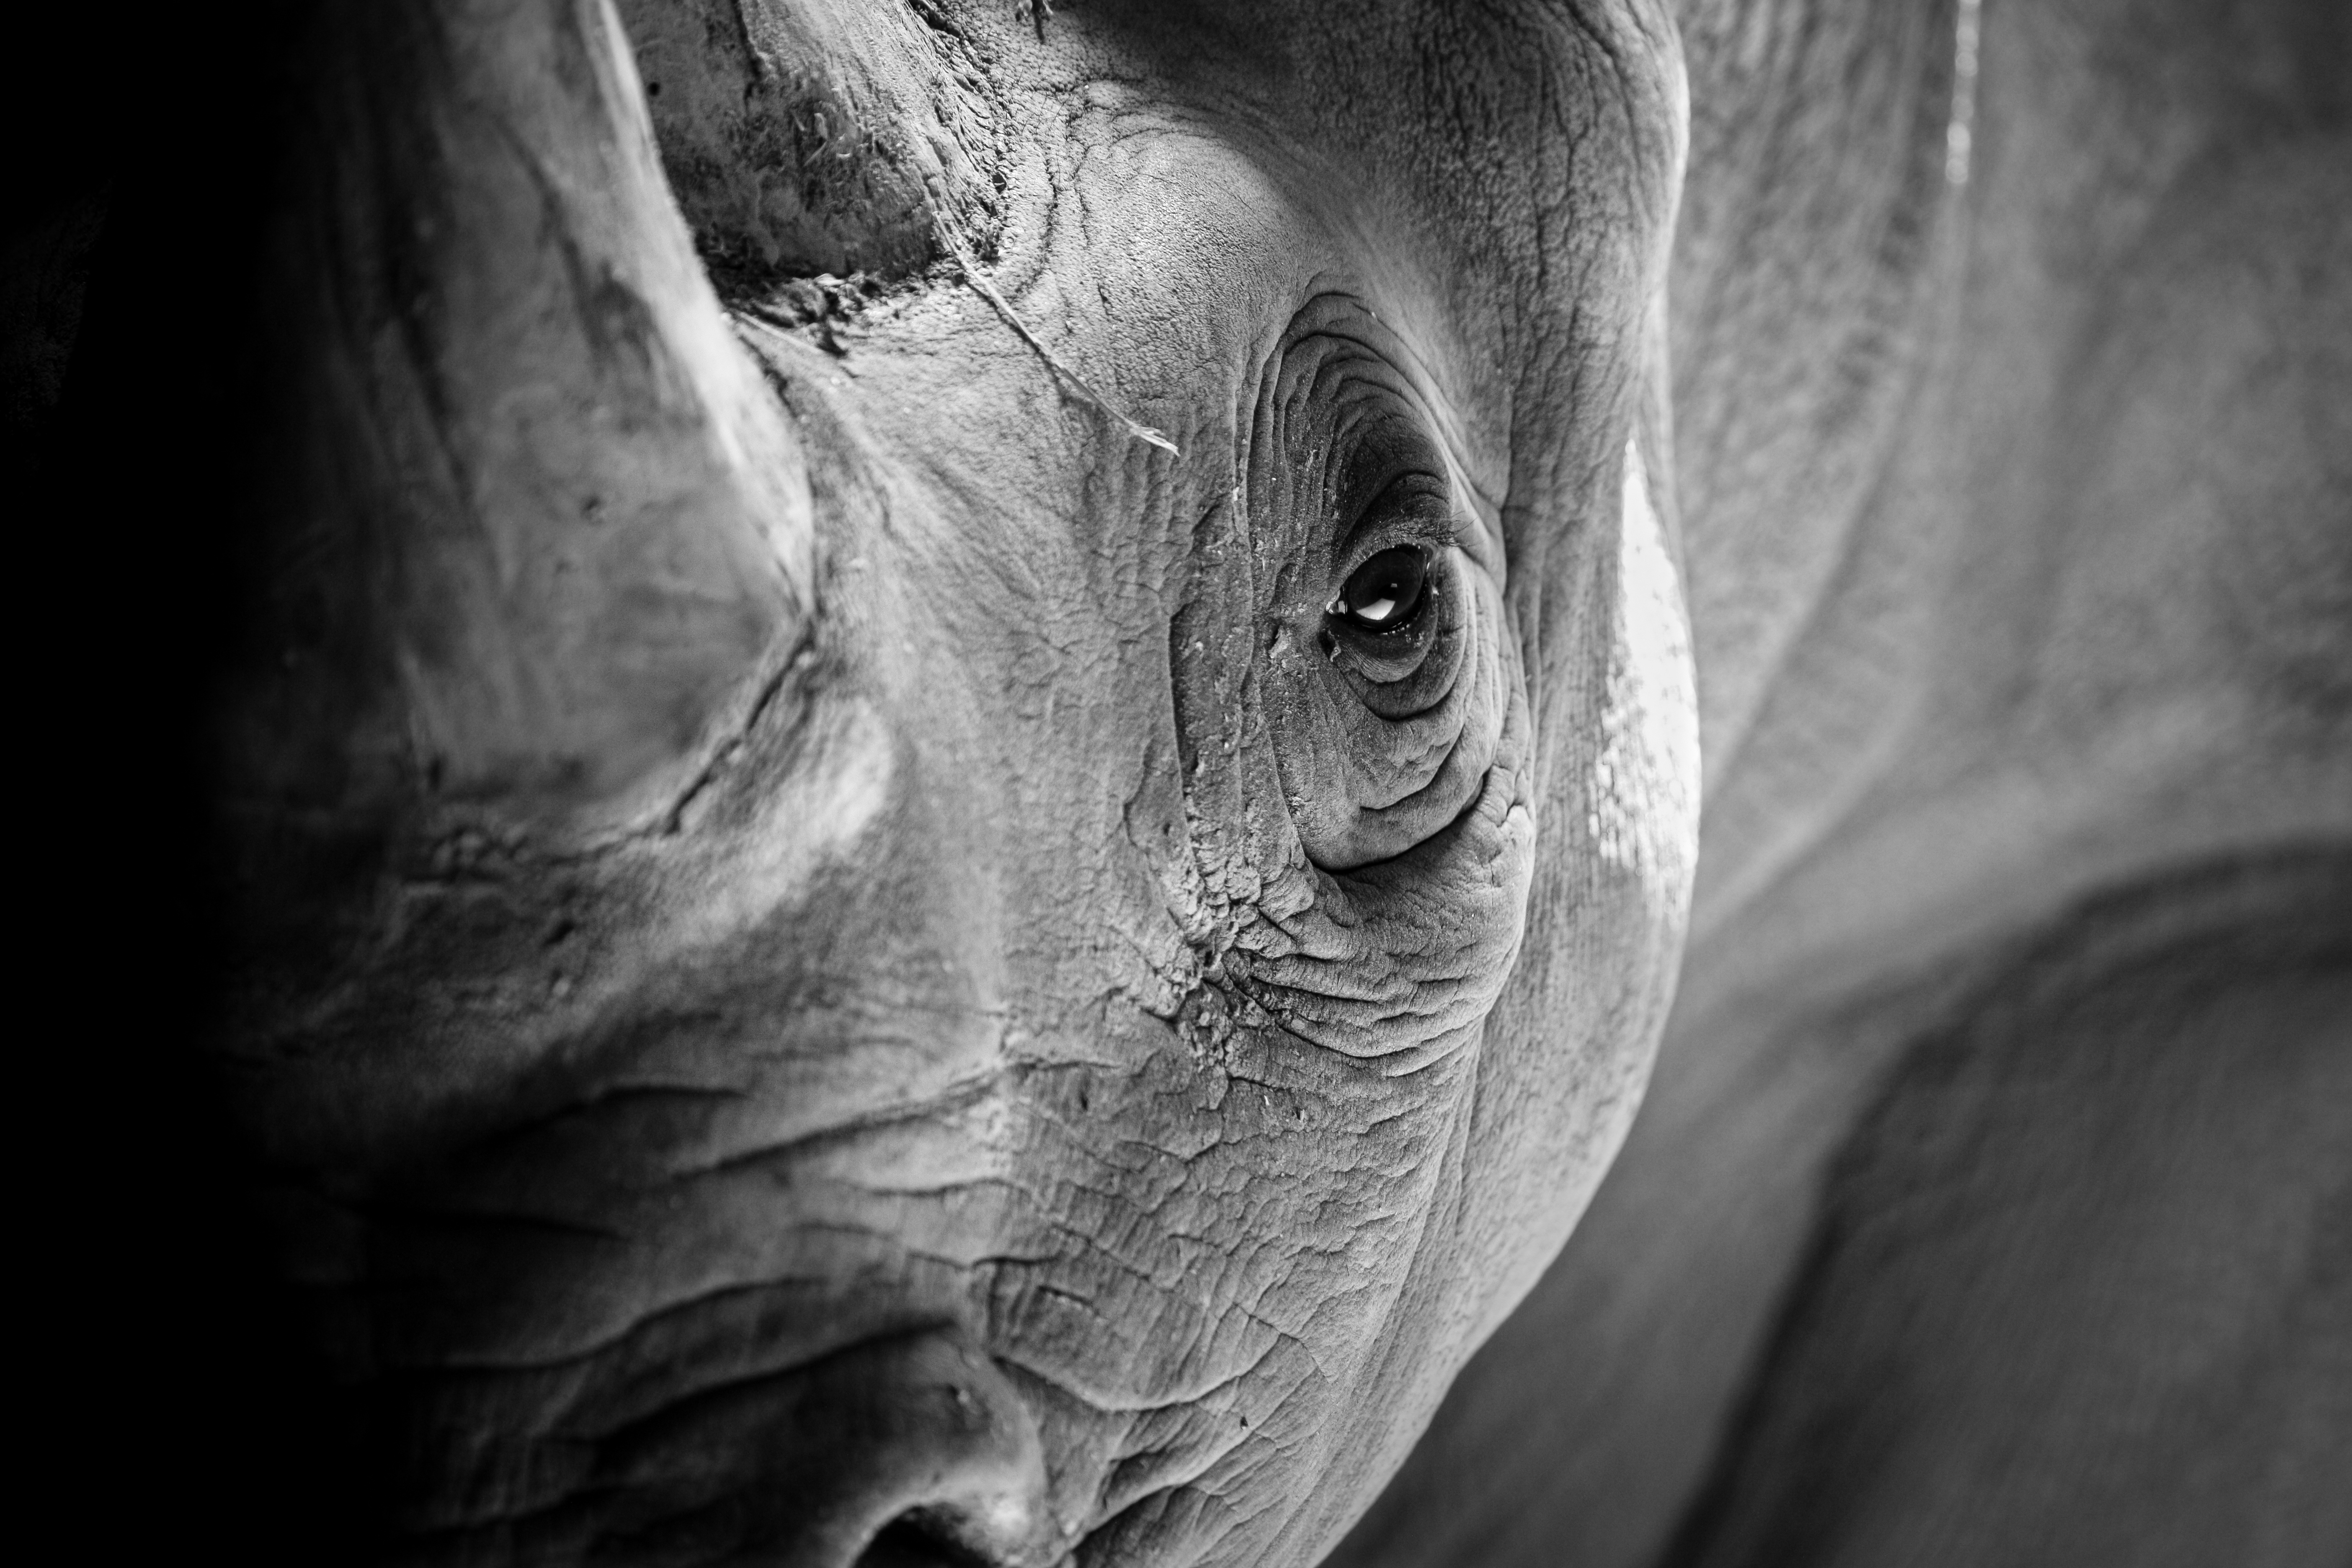 Les rhinocéros blancs se divisent en deux sous-espèces. Les rhinocéros blancs du Nord sont fonctionnellement éteints, ceux du Sud sont quasi menacés, mais en augmentation.&nbsp;© Sherrod Photography, Adobe Stock